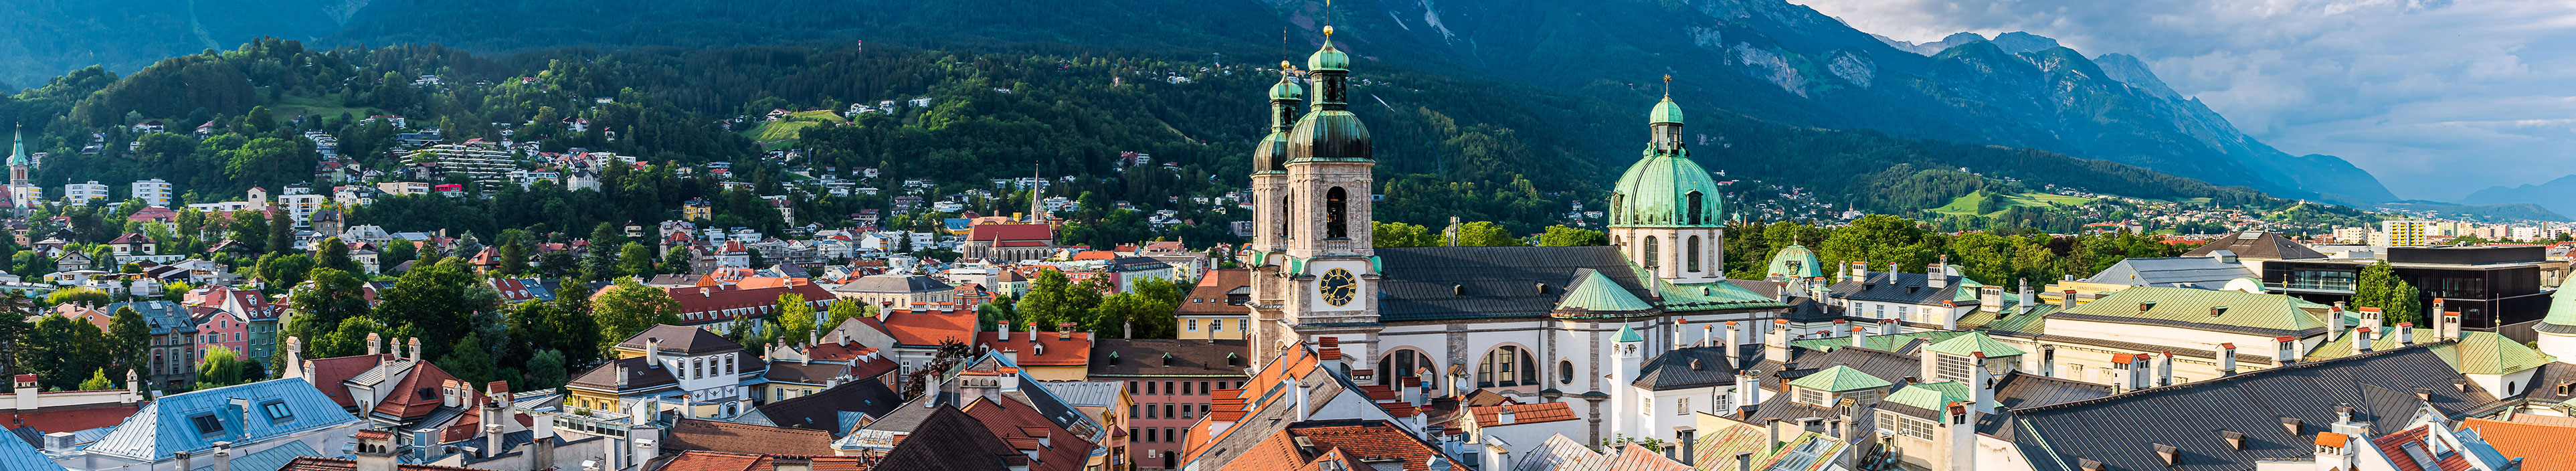 Stadtbild von Innsbruck